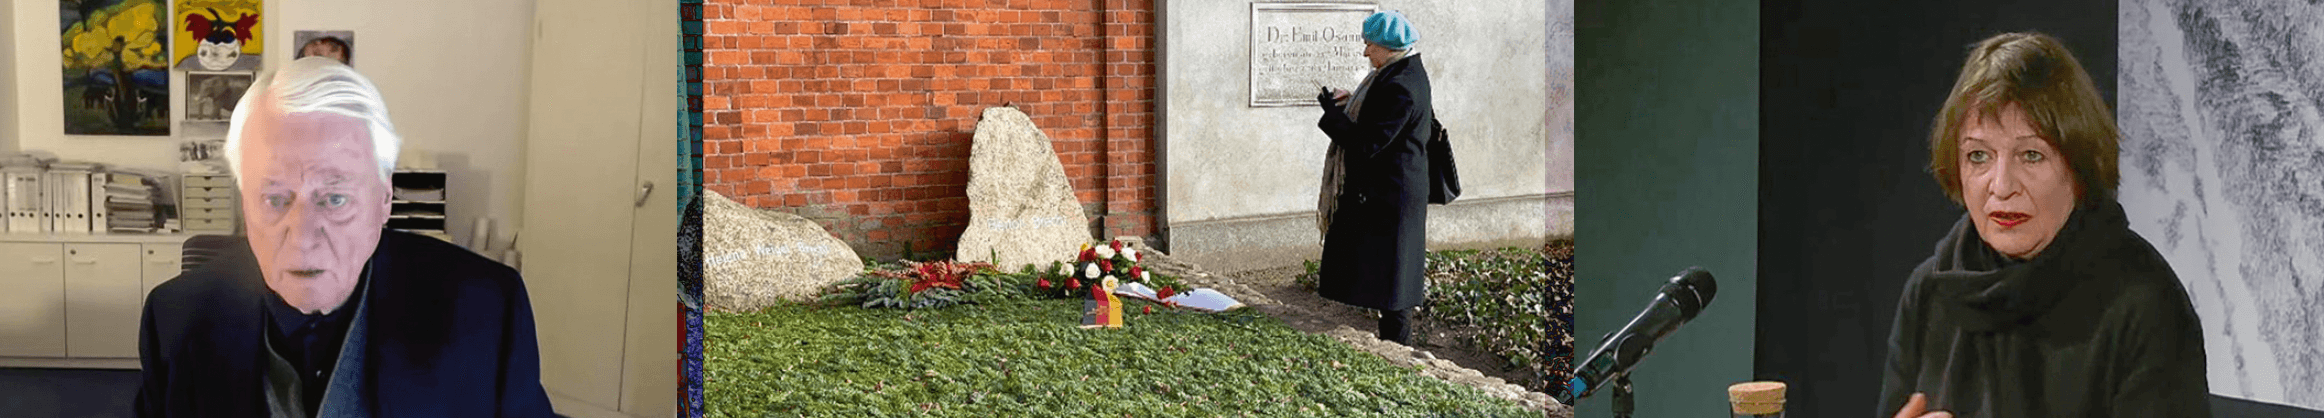 Screenshots der Veranstaltungen (von links nach rechts: Alexander Kluge, Brechts Grab und Prof. Dr. Ulrike Haß